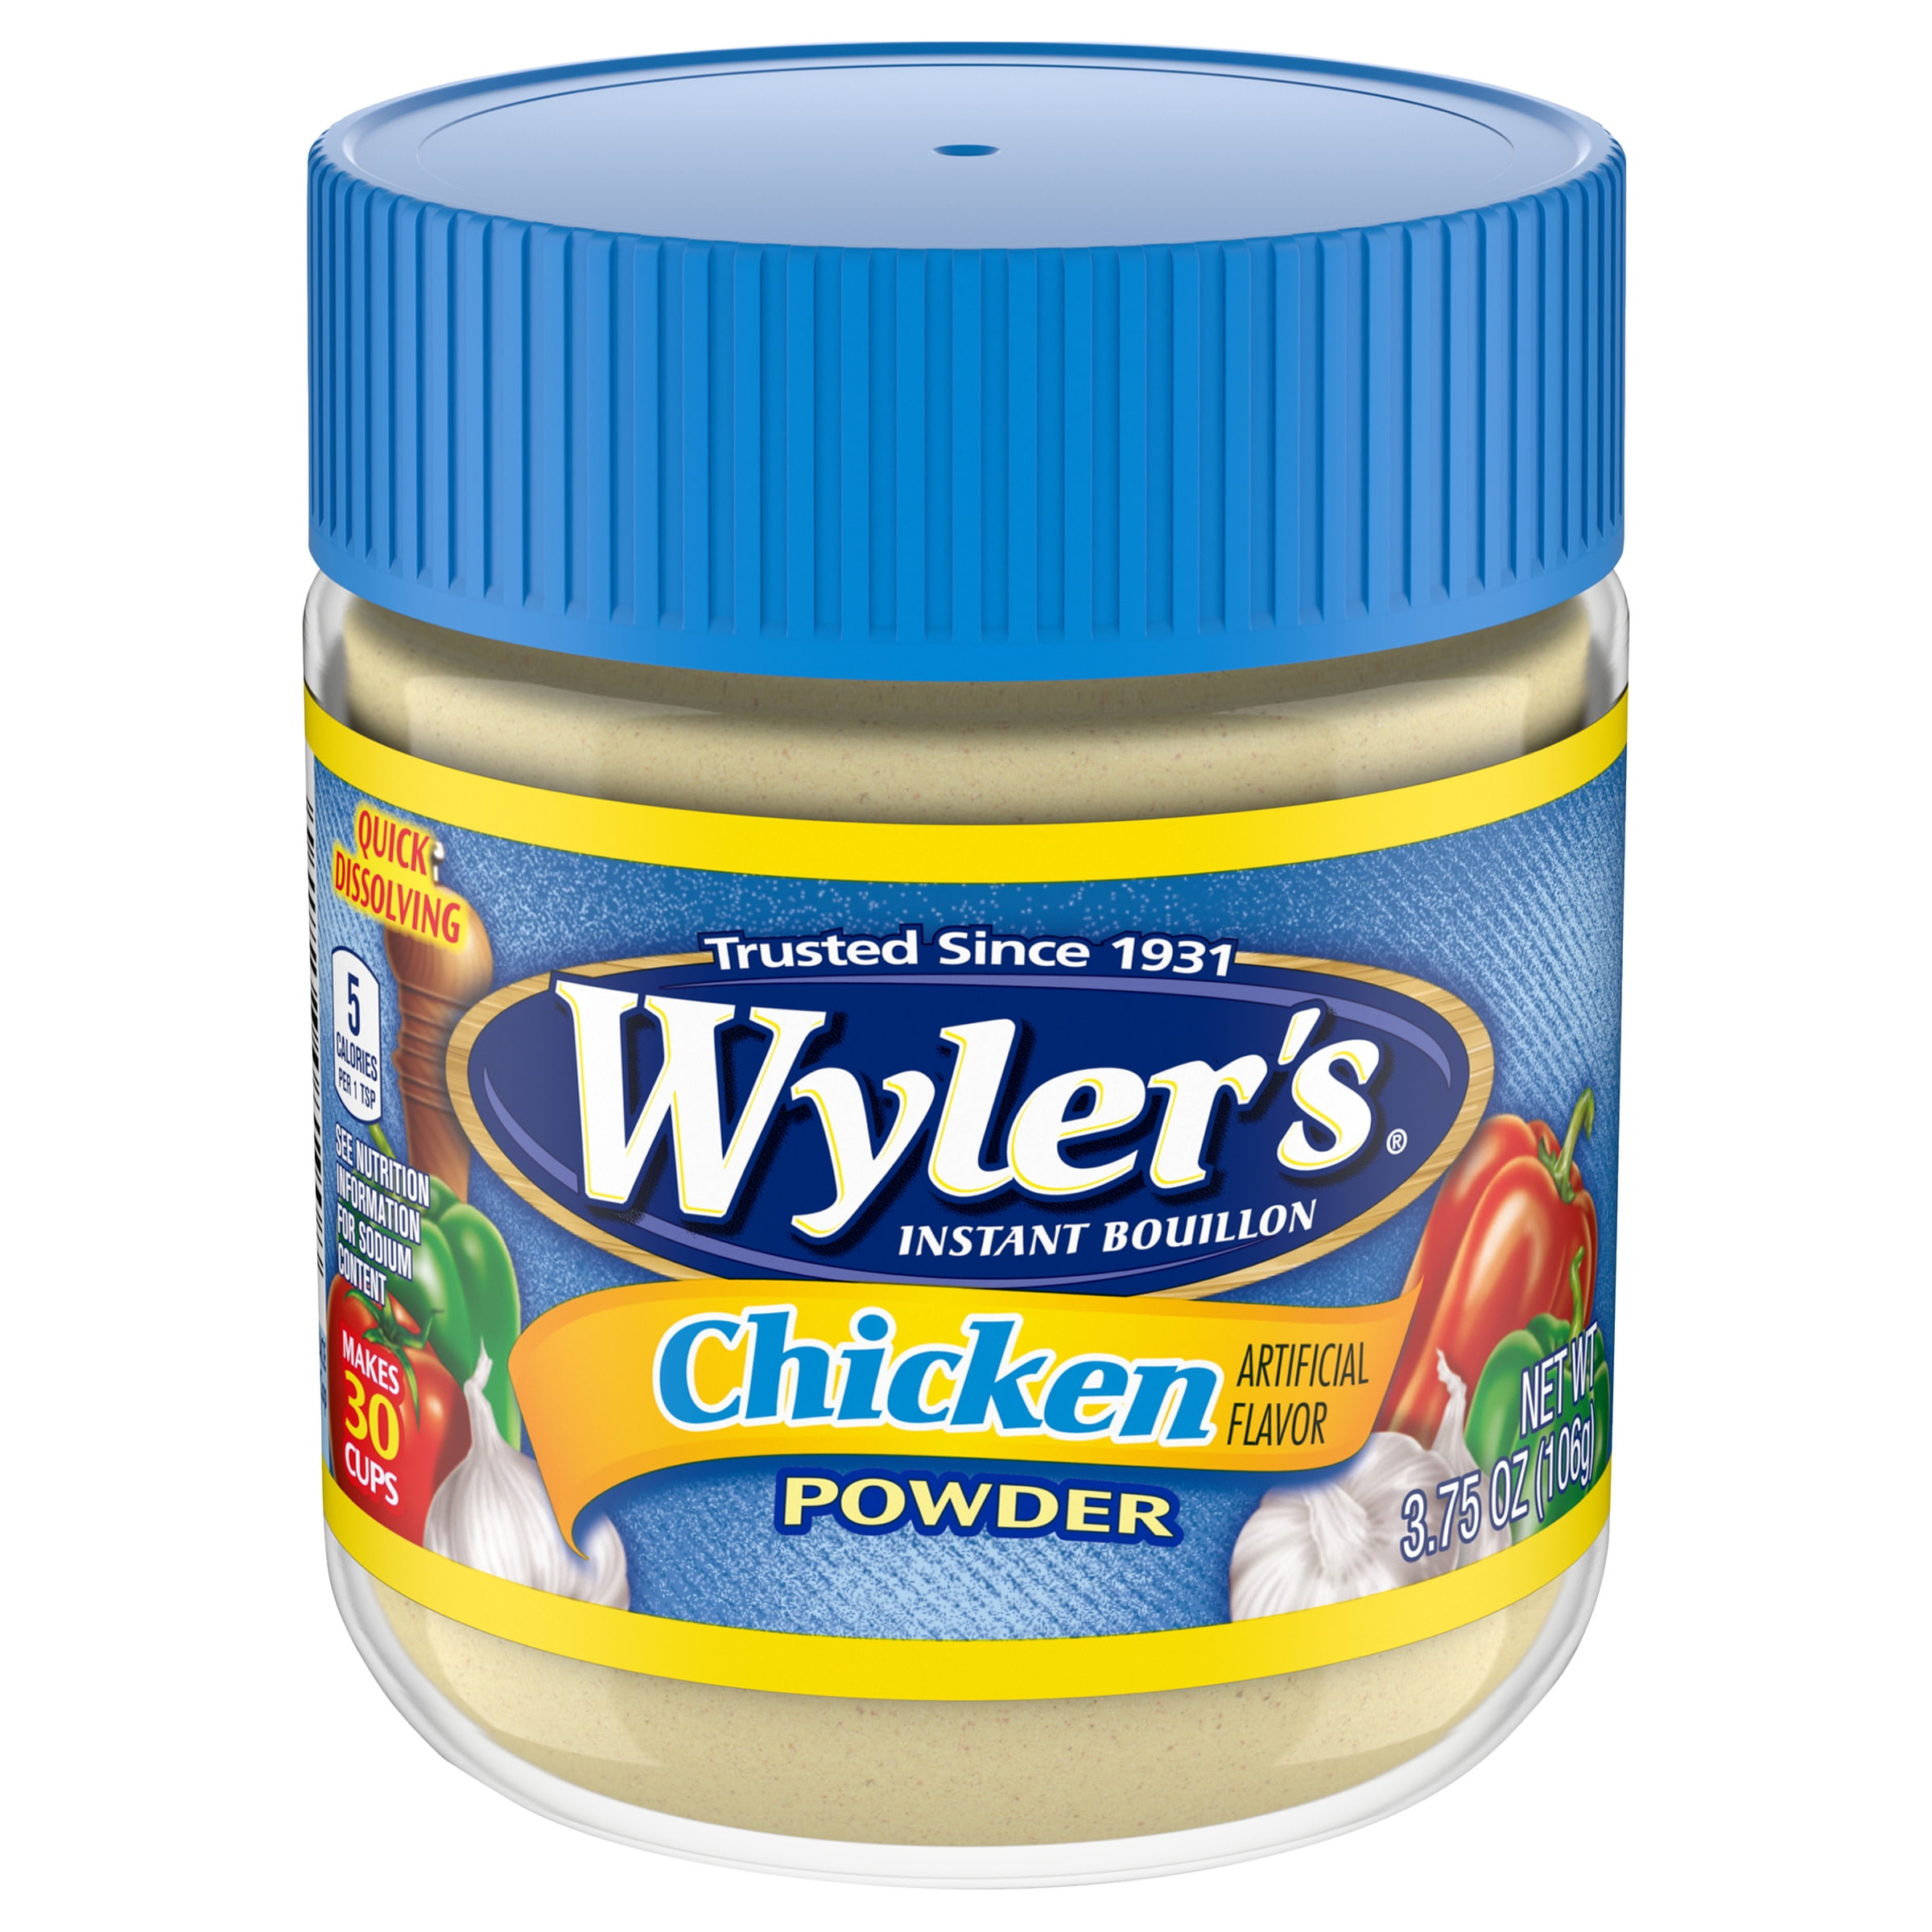 Wyler's Instant Bouillon Chicken Flavored Powder, 3.75 oz Jar